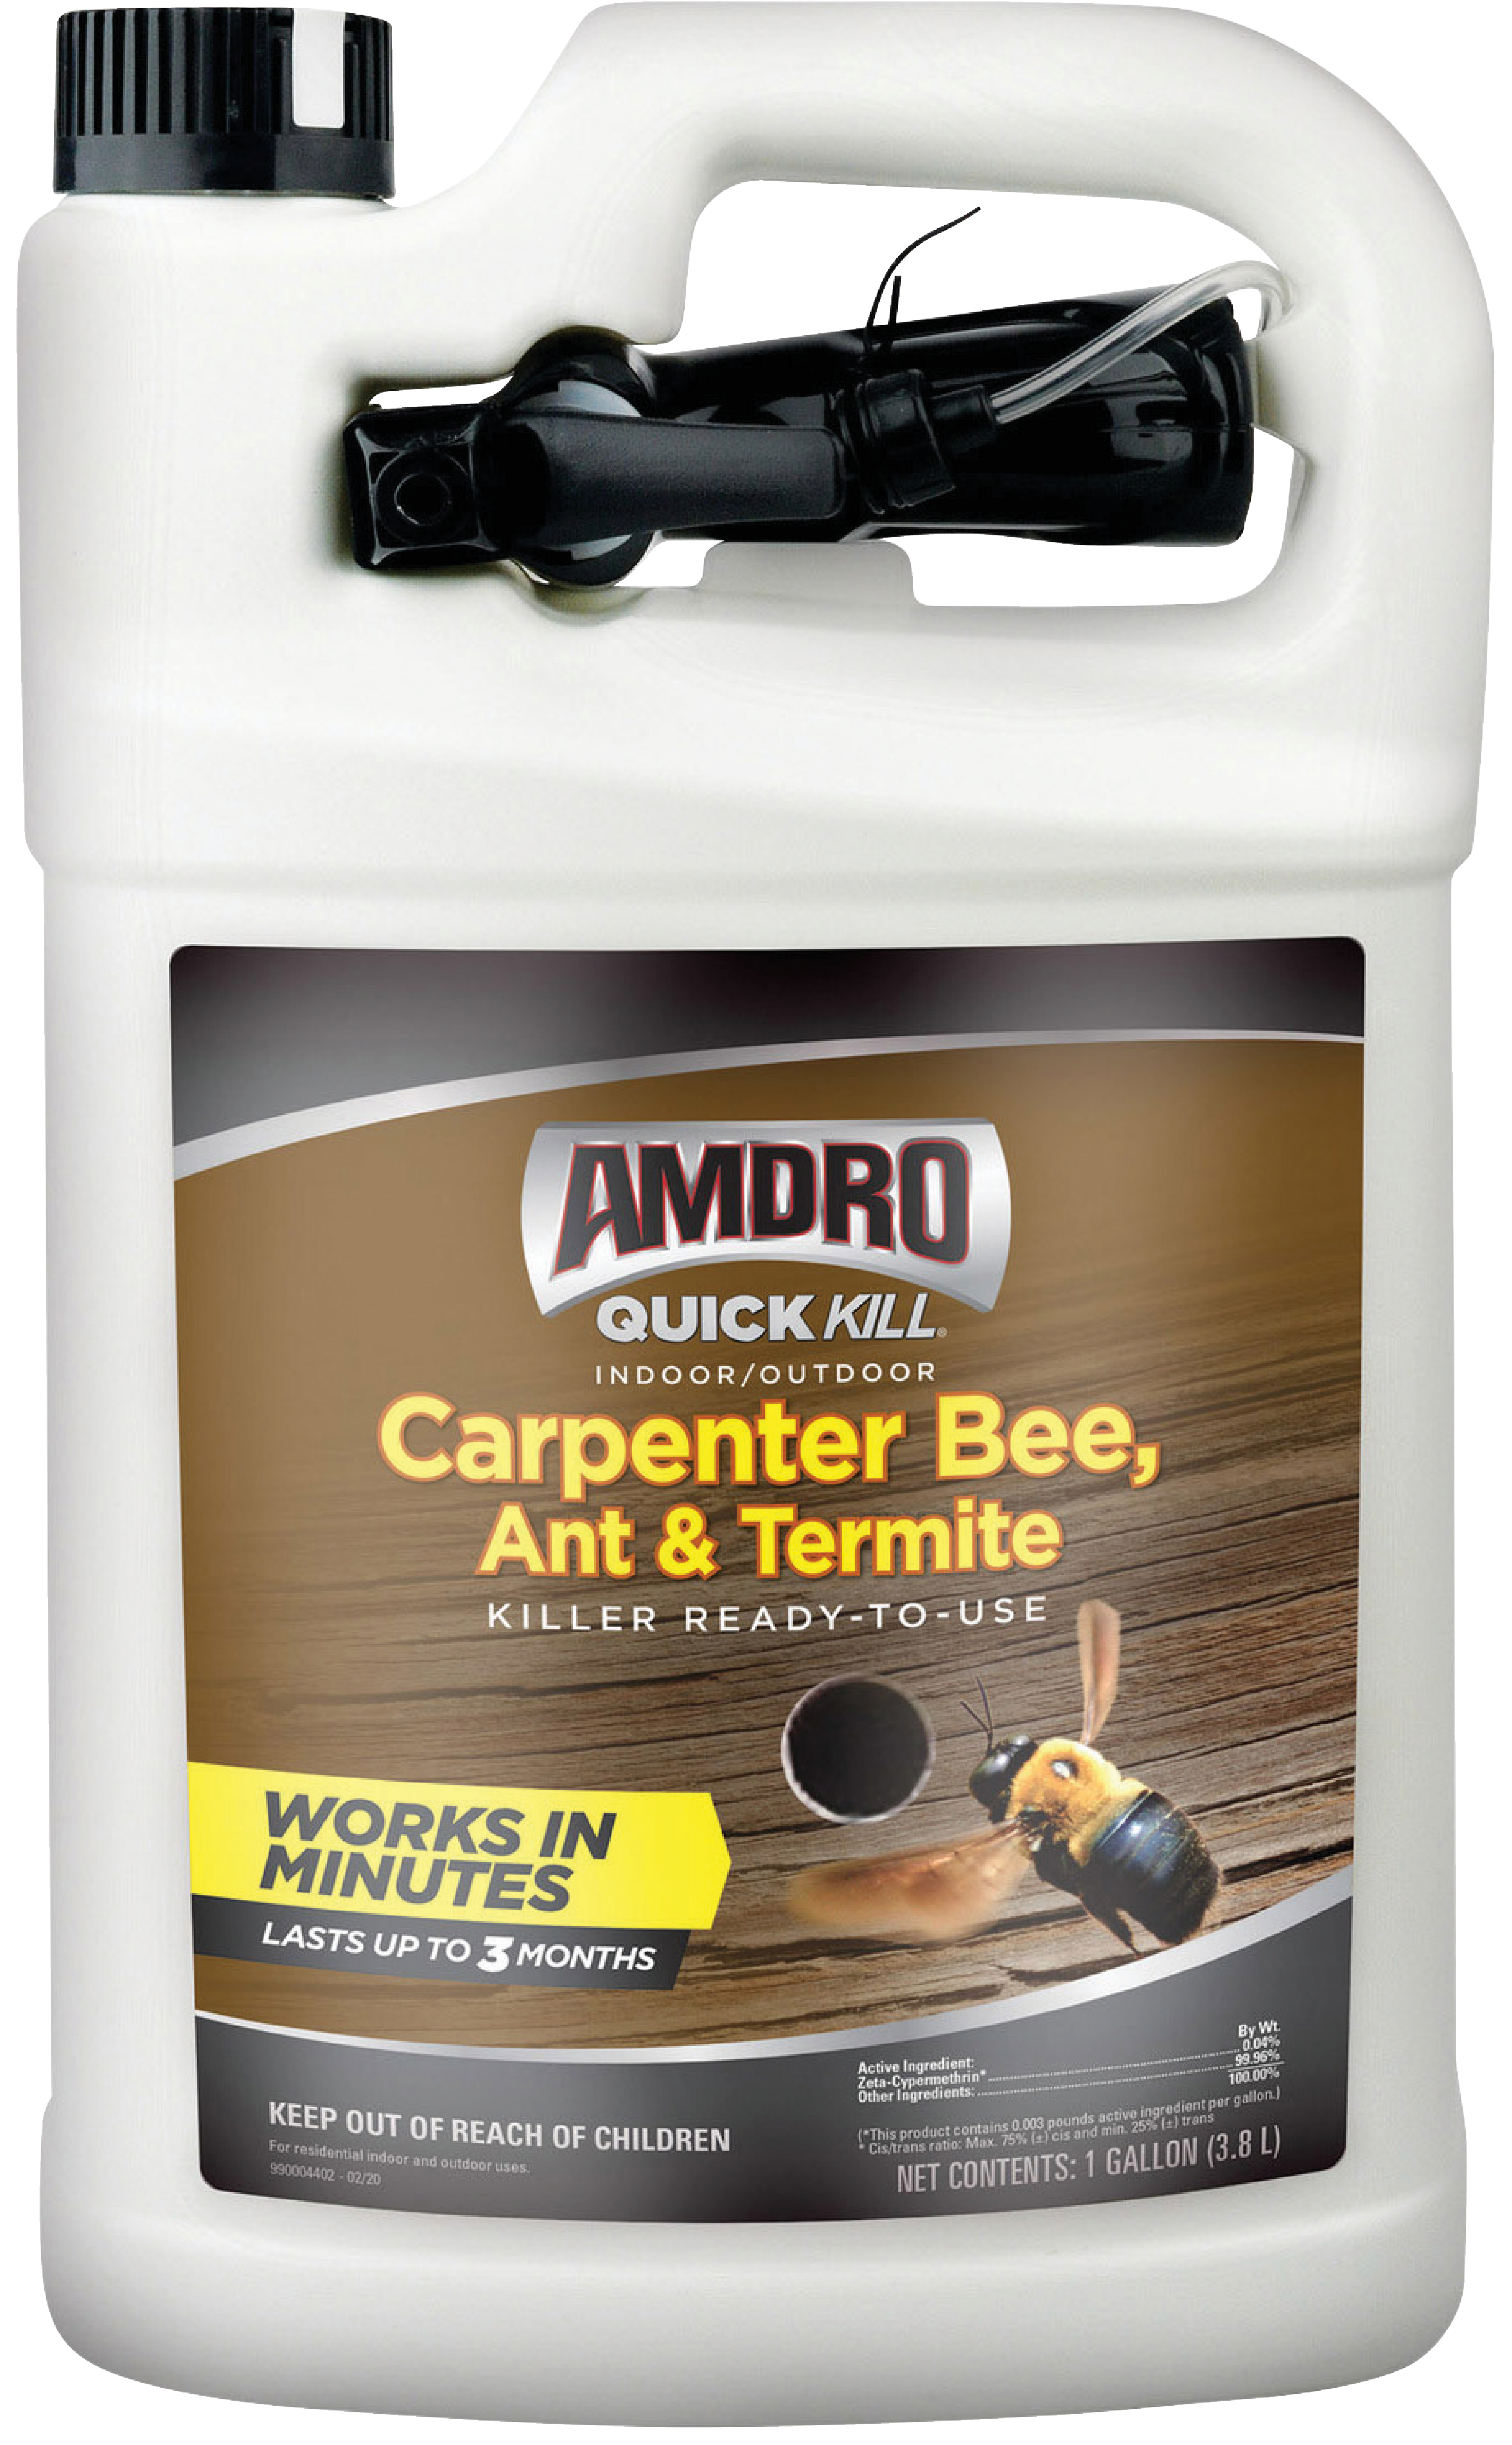 kill carpenter bees